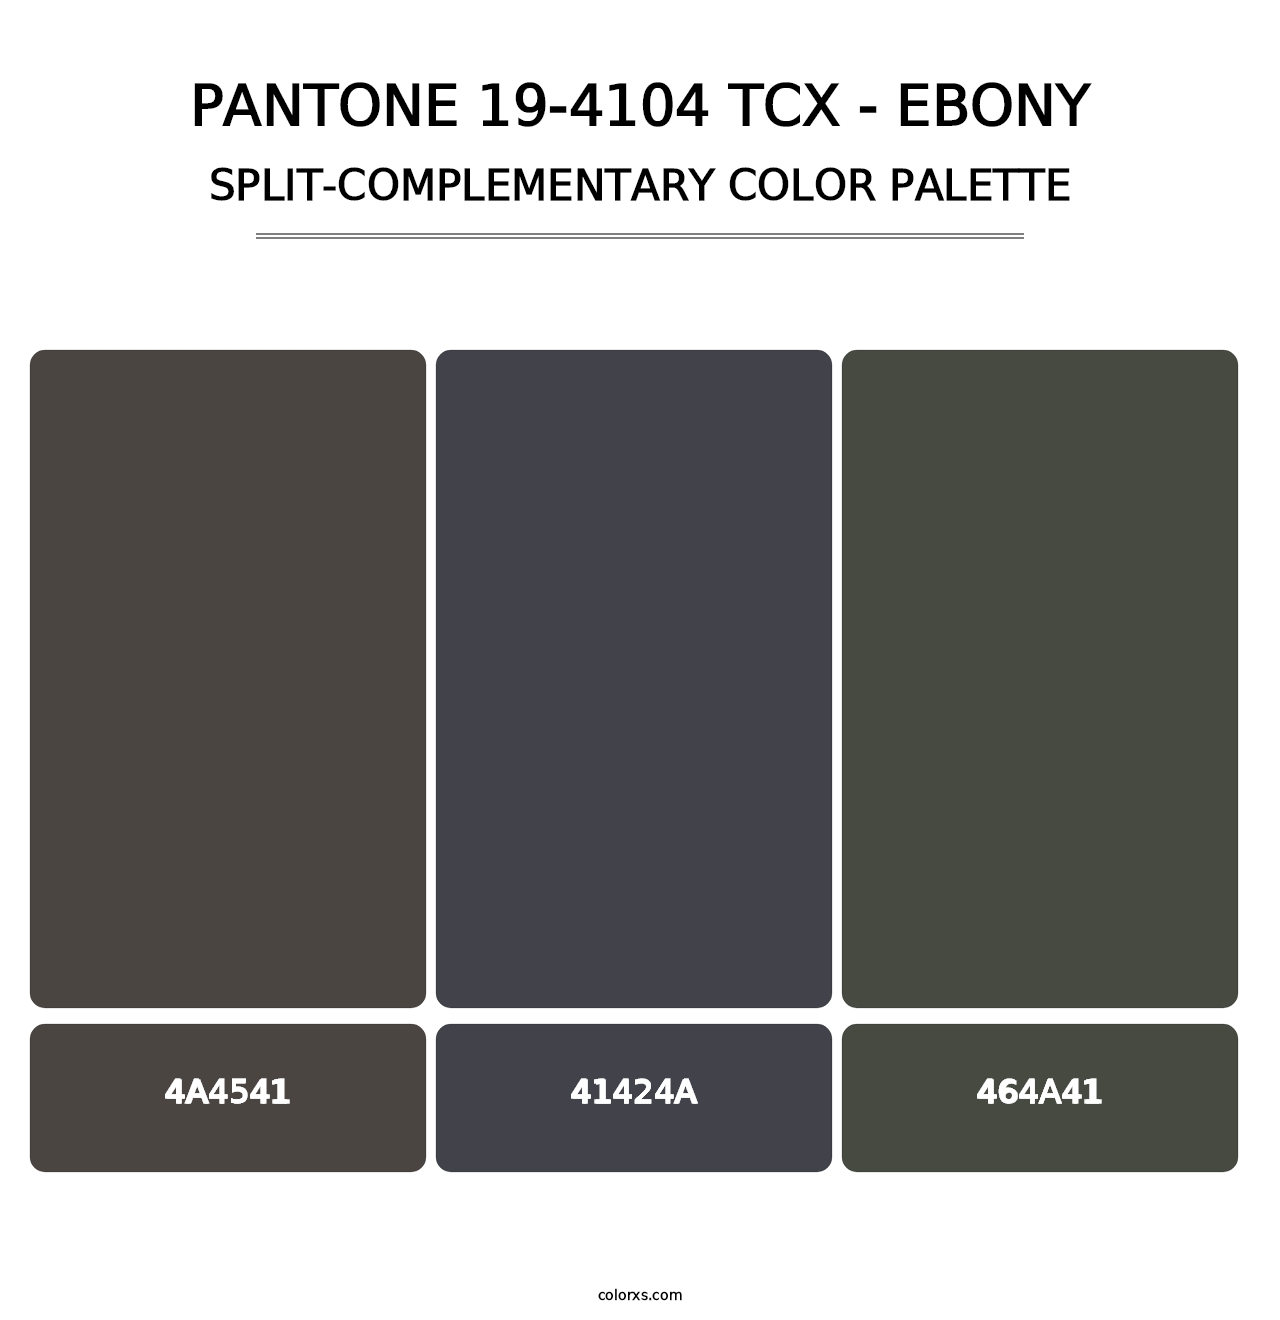 PANTONE 19-4104 TCX - Ebony - Split-Complementary Color Palette